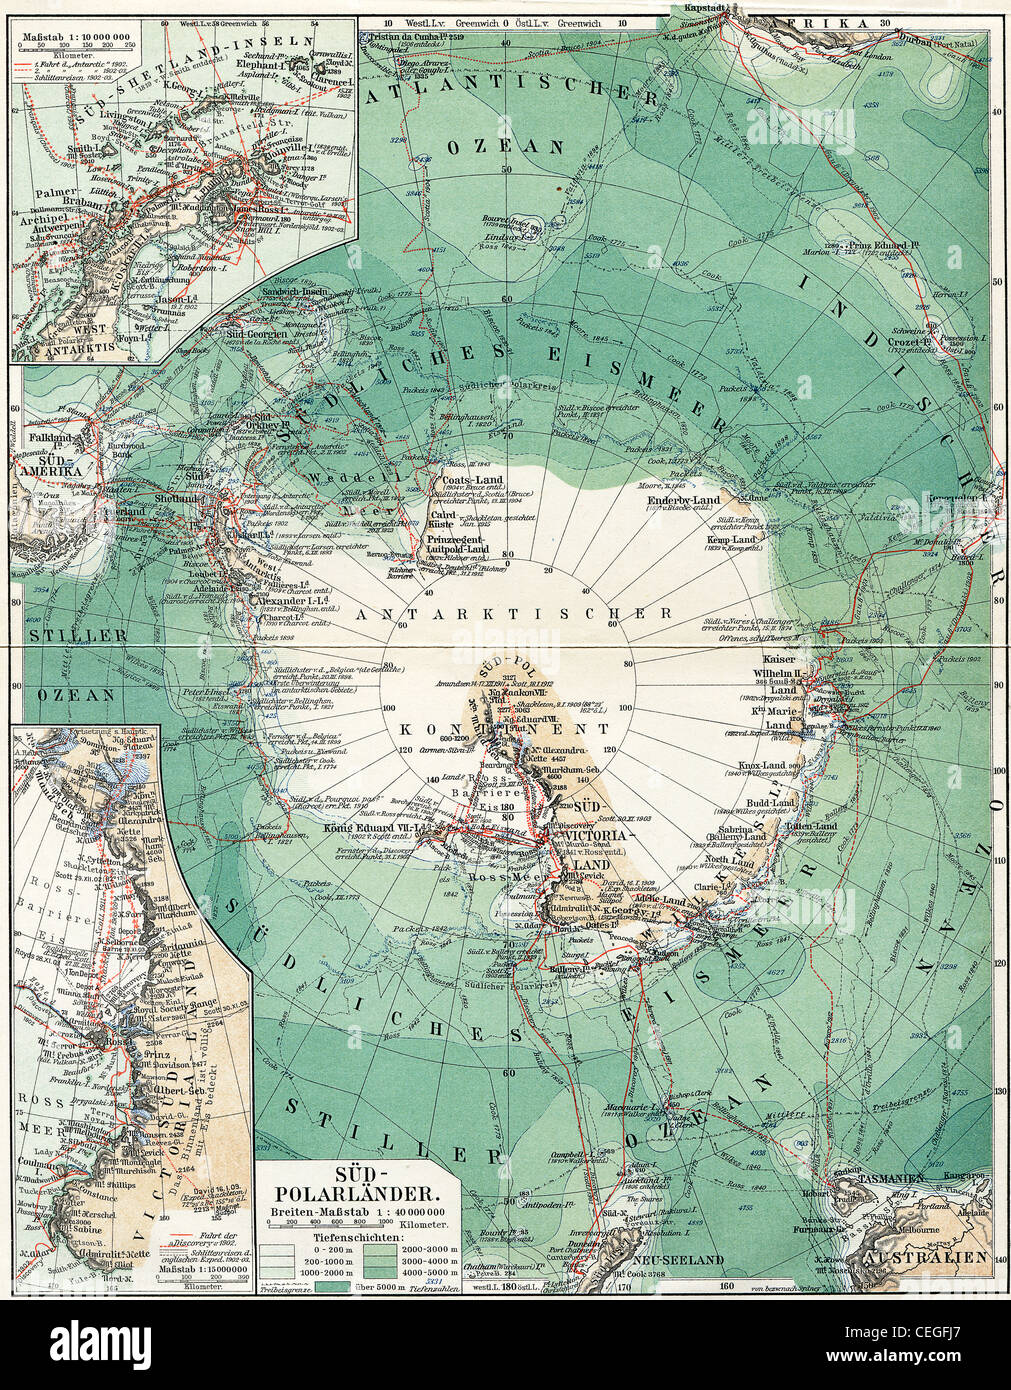 Il polo sud. Mappa del continente, gli oceani e i mari, le isole e le terre  attorno a essa Foto stock - Alamy